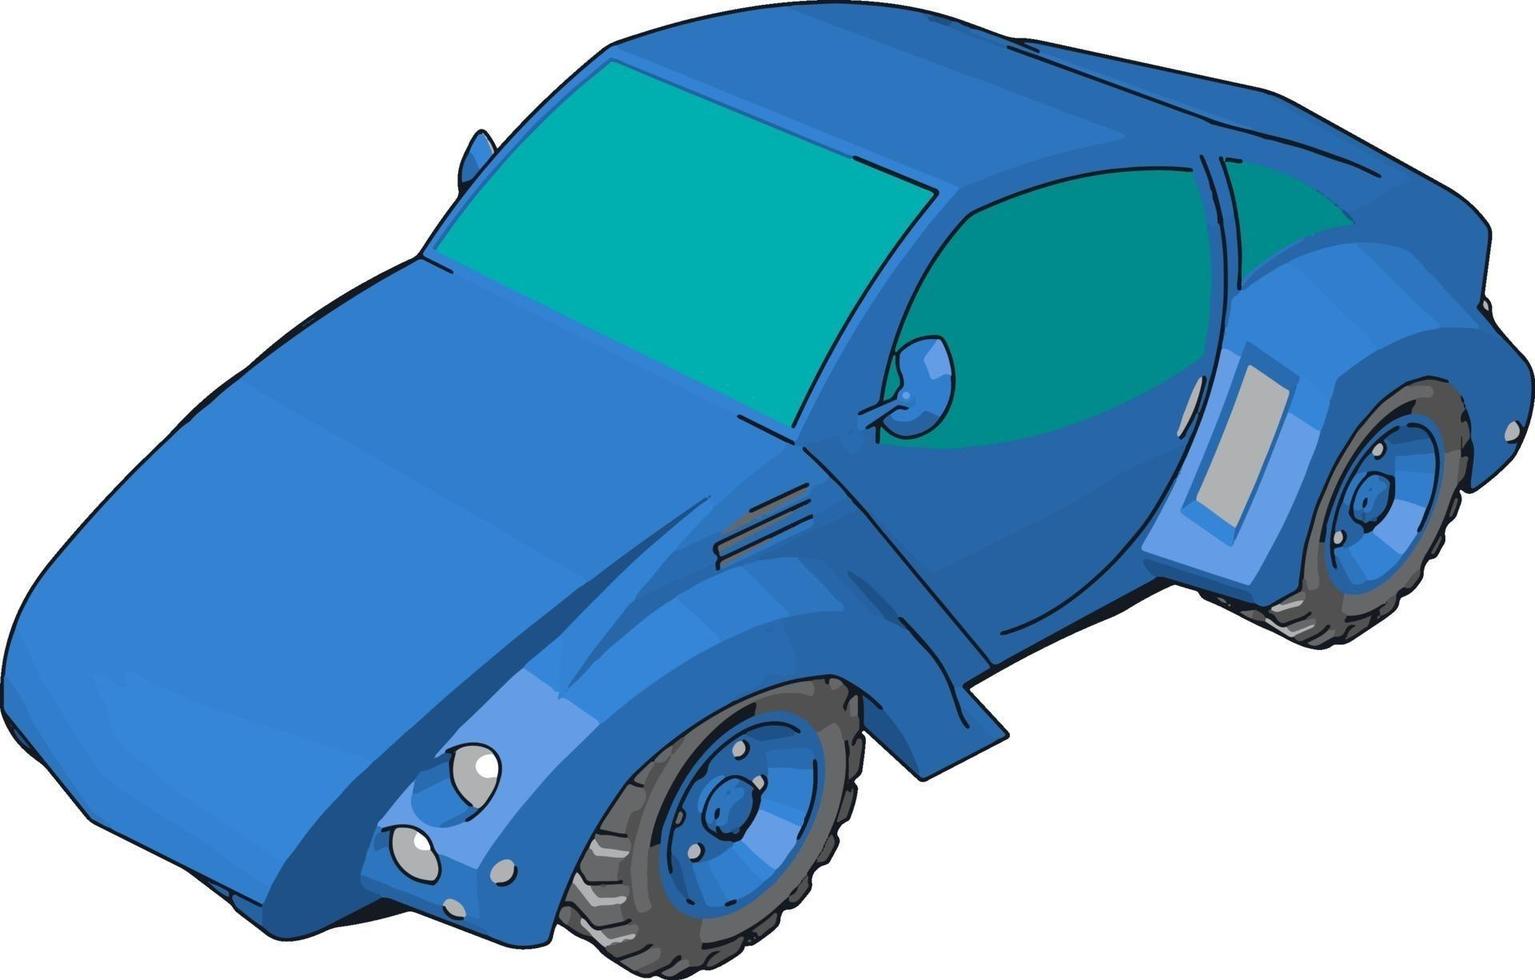 voiture bleue cool, illustration, vecteur sur fond blanc.